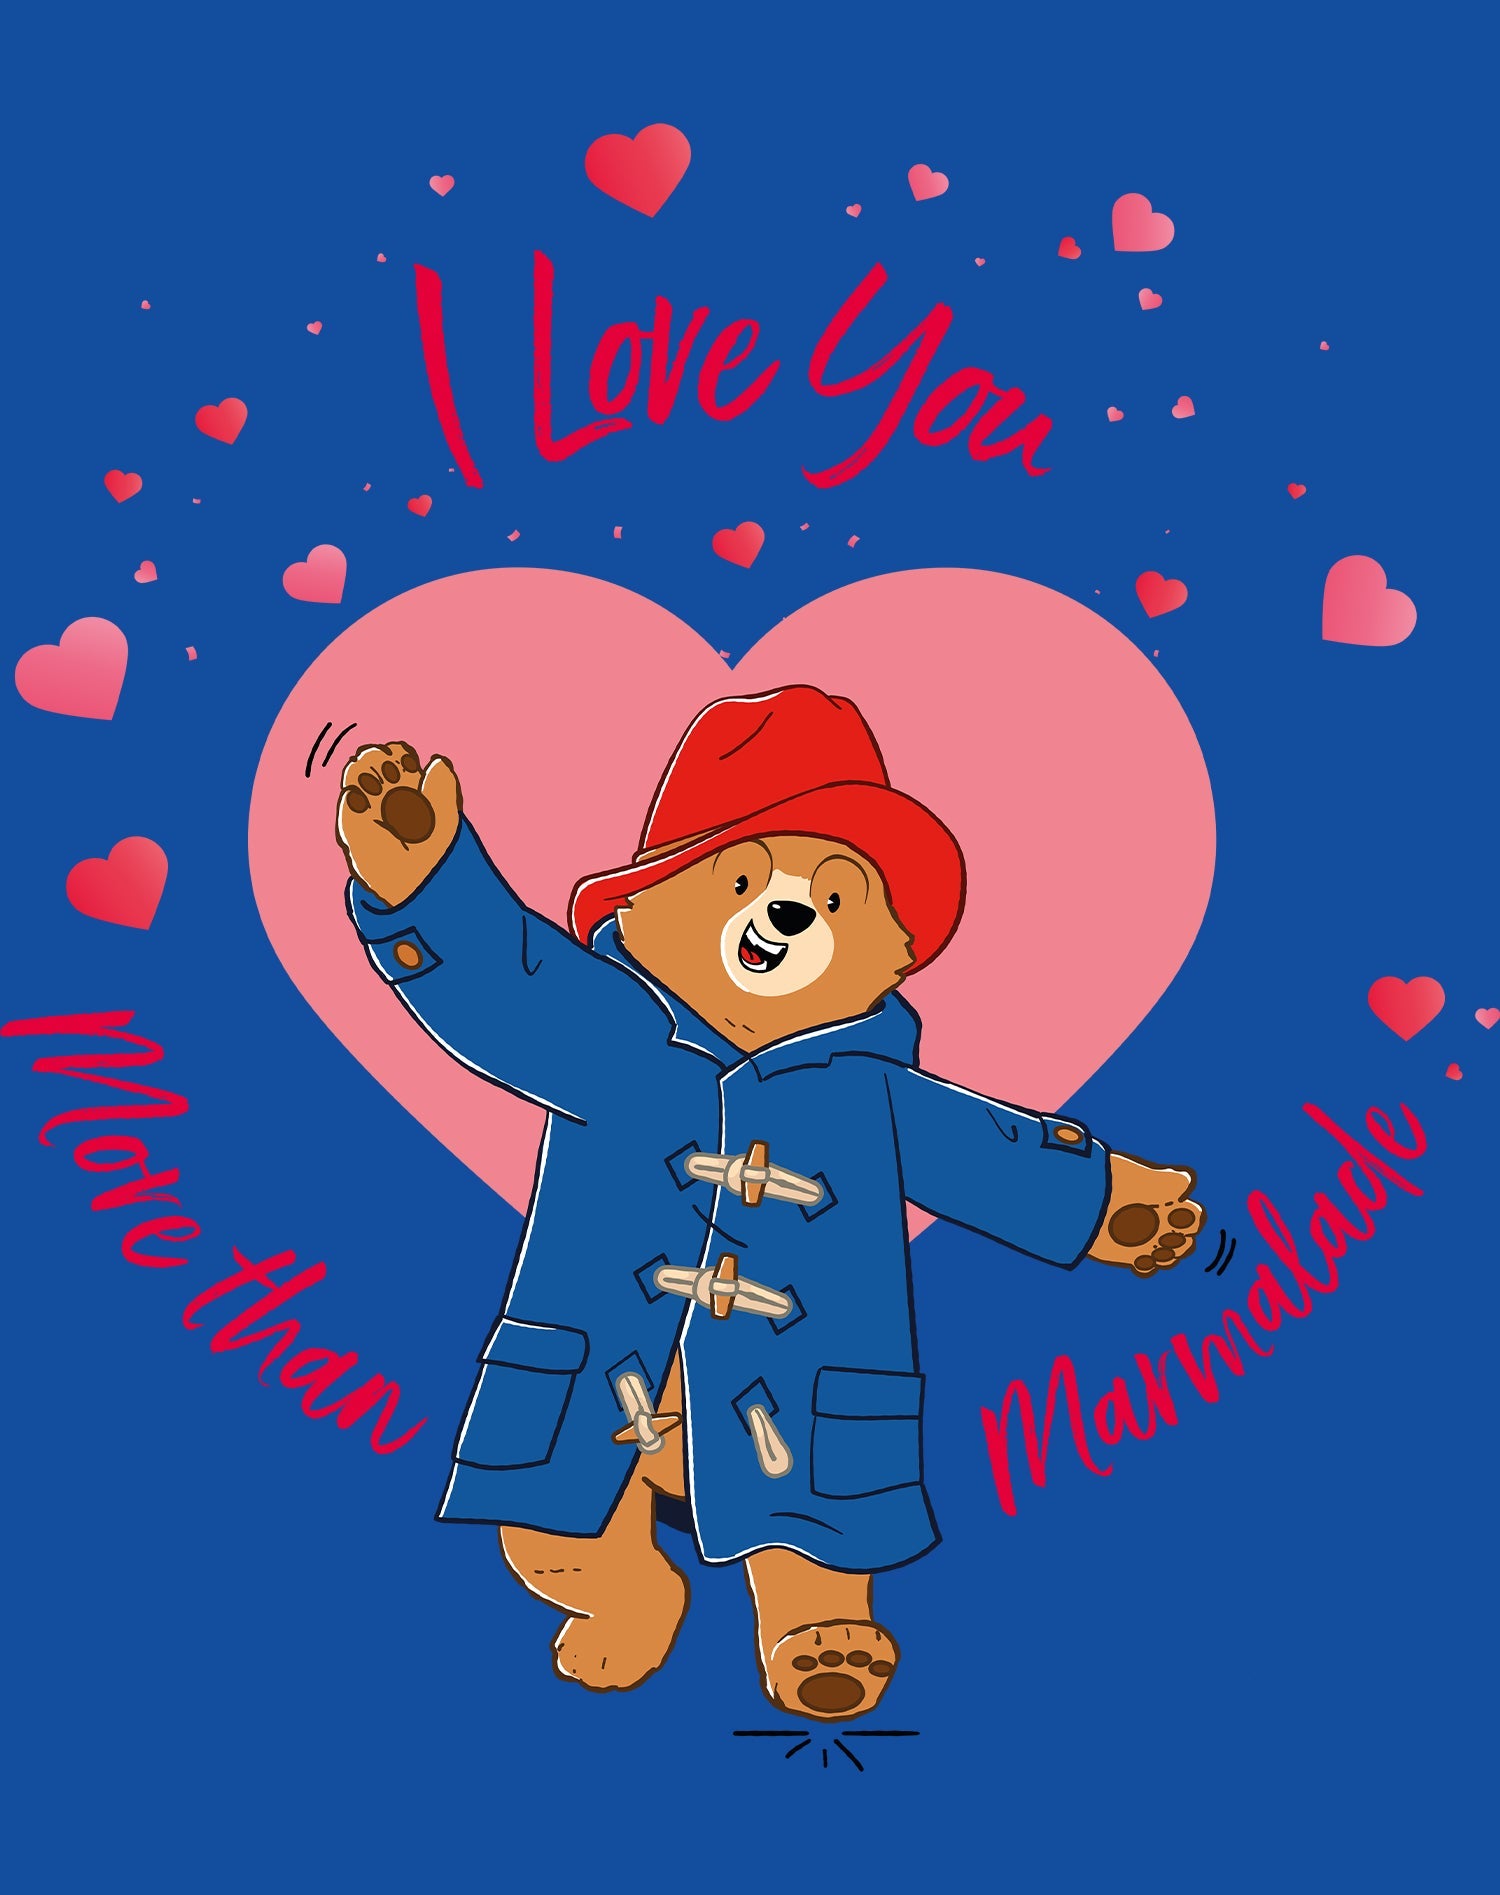 Paddington Bear Love Marmalade Big Hearts Women's T-Shirt